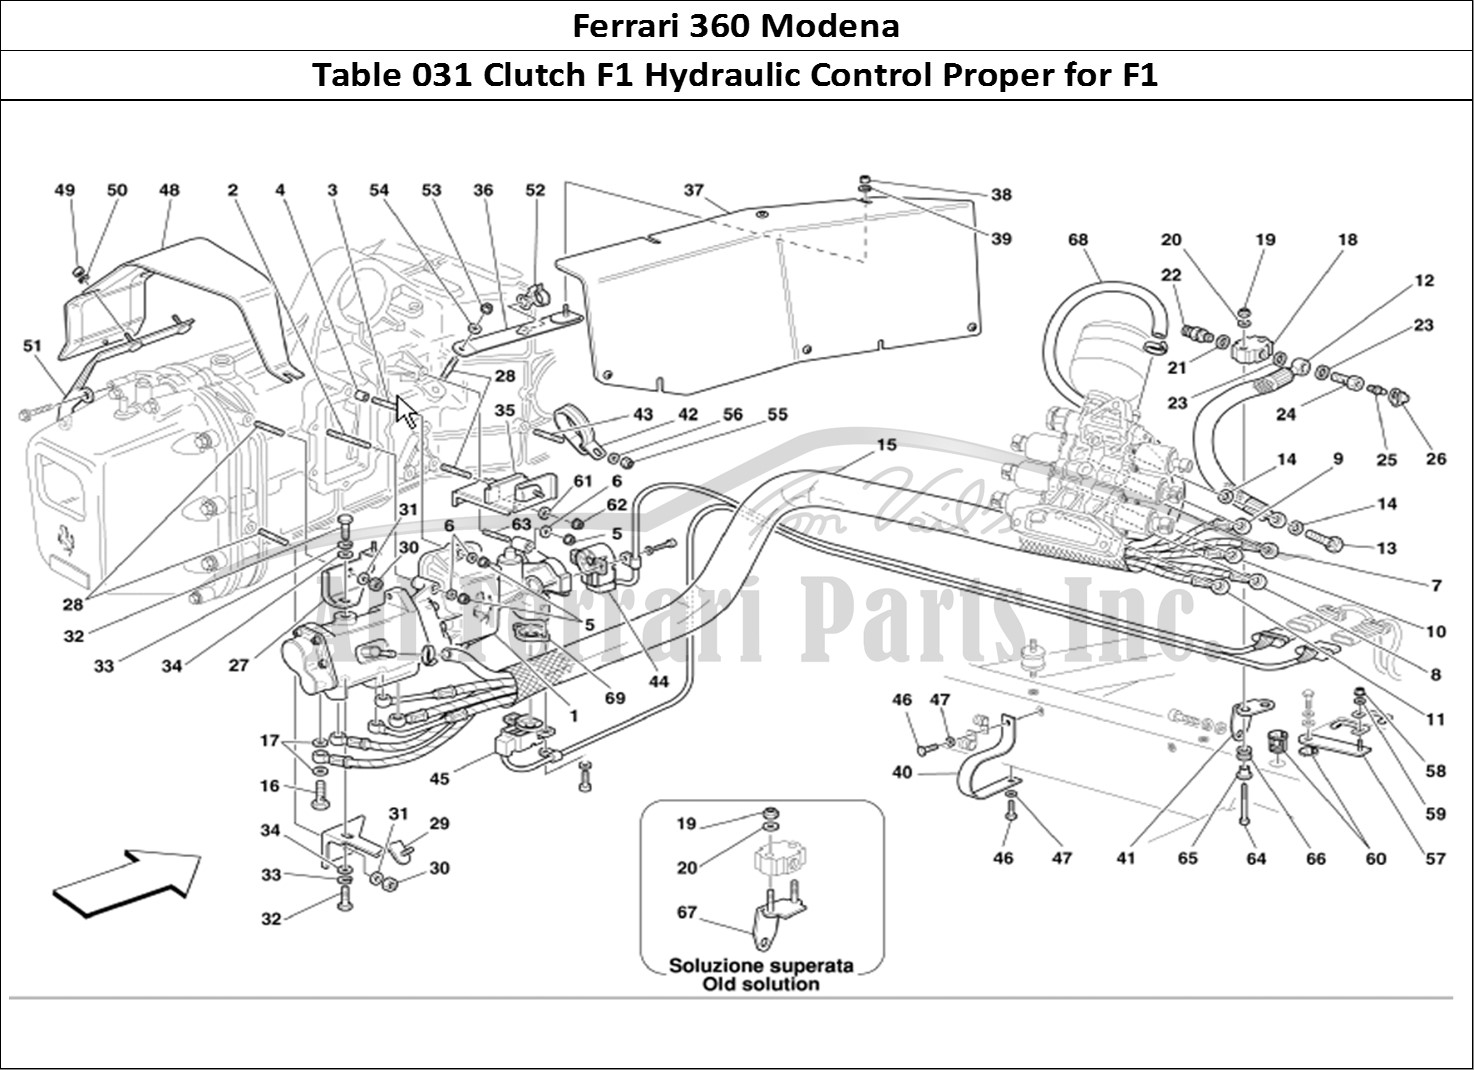 Ferrari Parts Ferrari 360 Modena Page 031 F1 Clutch Hydraulic Contr